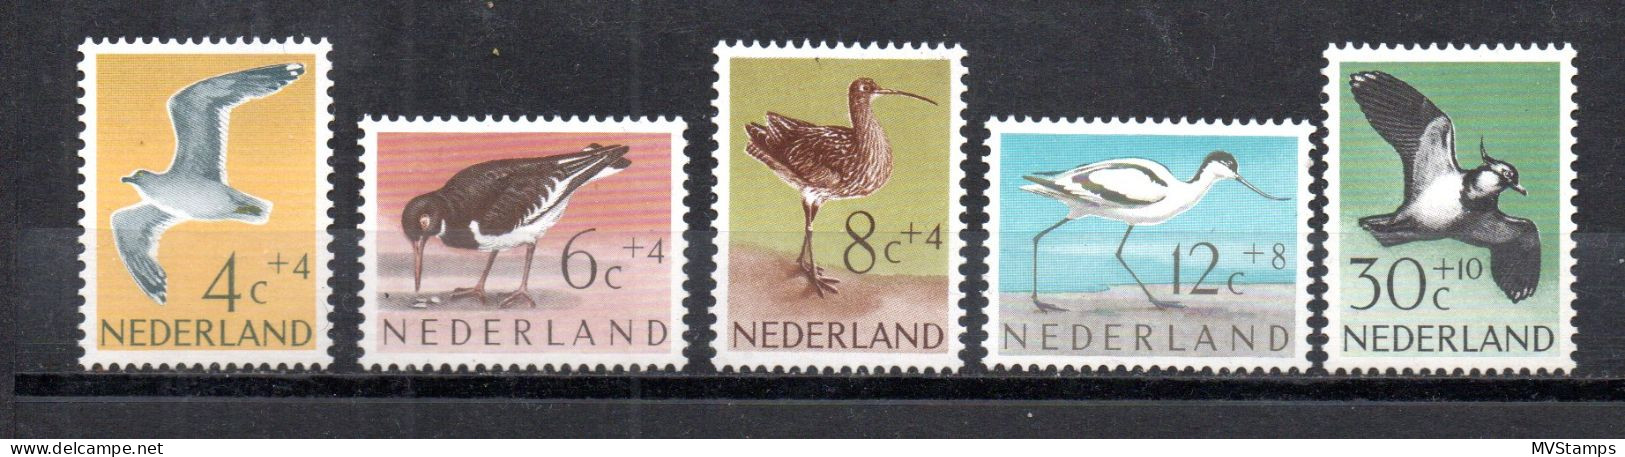 Netherlands 1961 Set Birds/Vogel Stamps (Michel 760/64) MNH - Unused Stamps